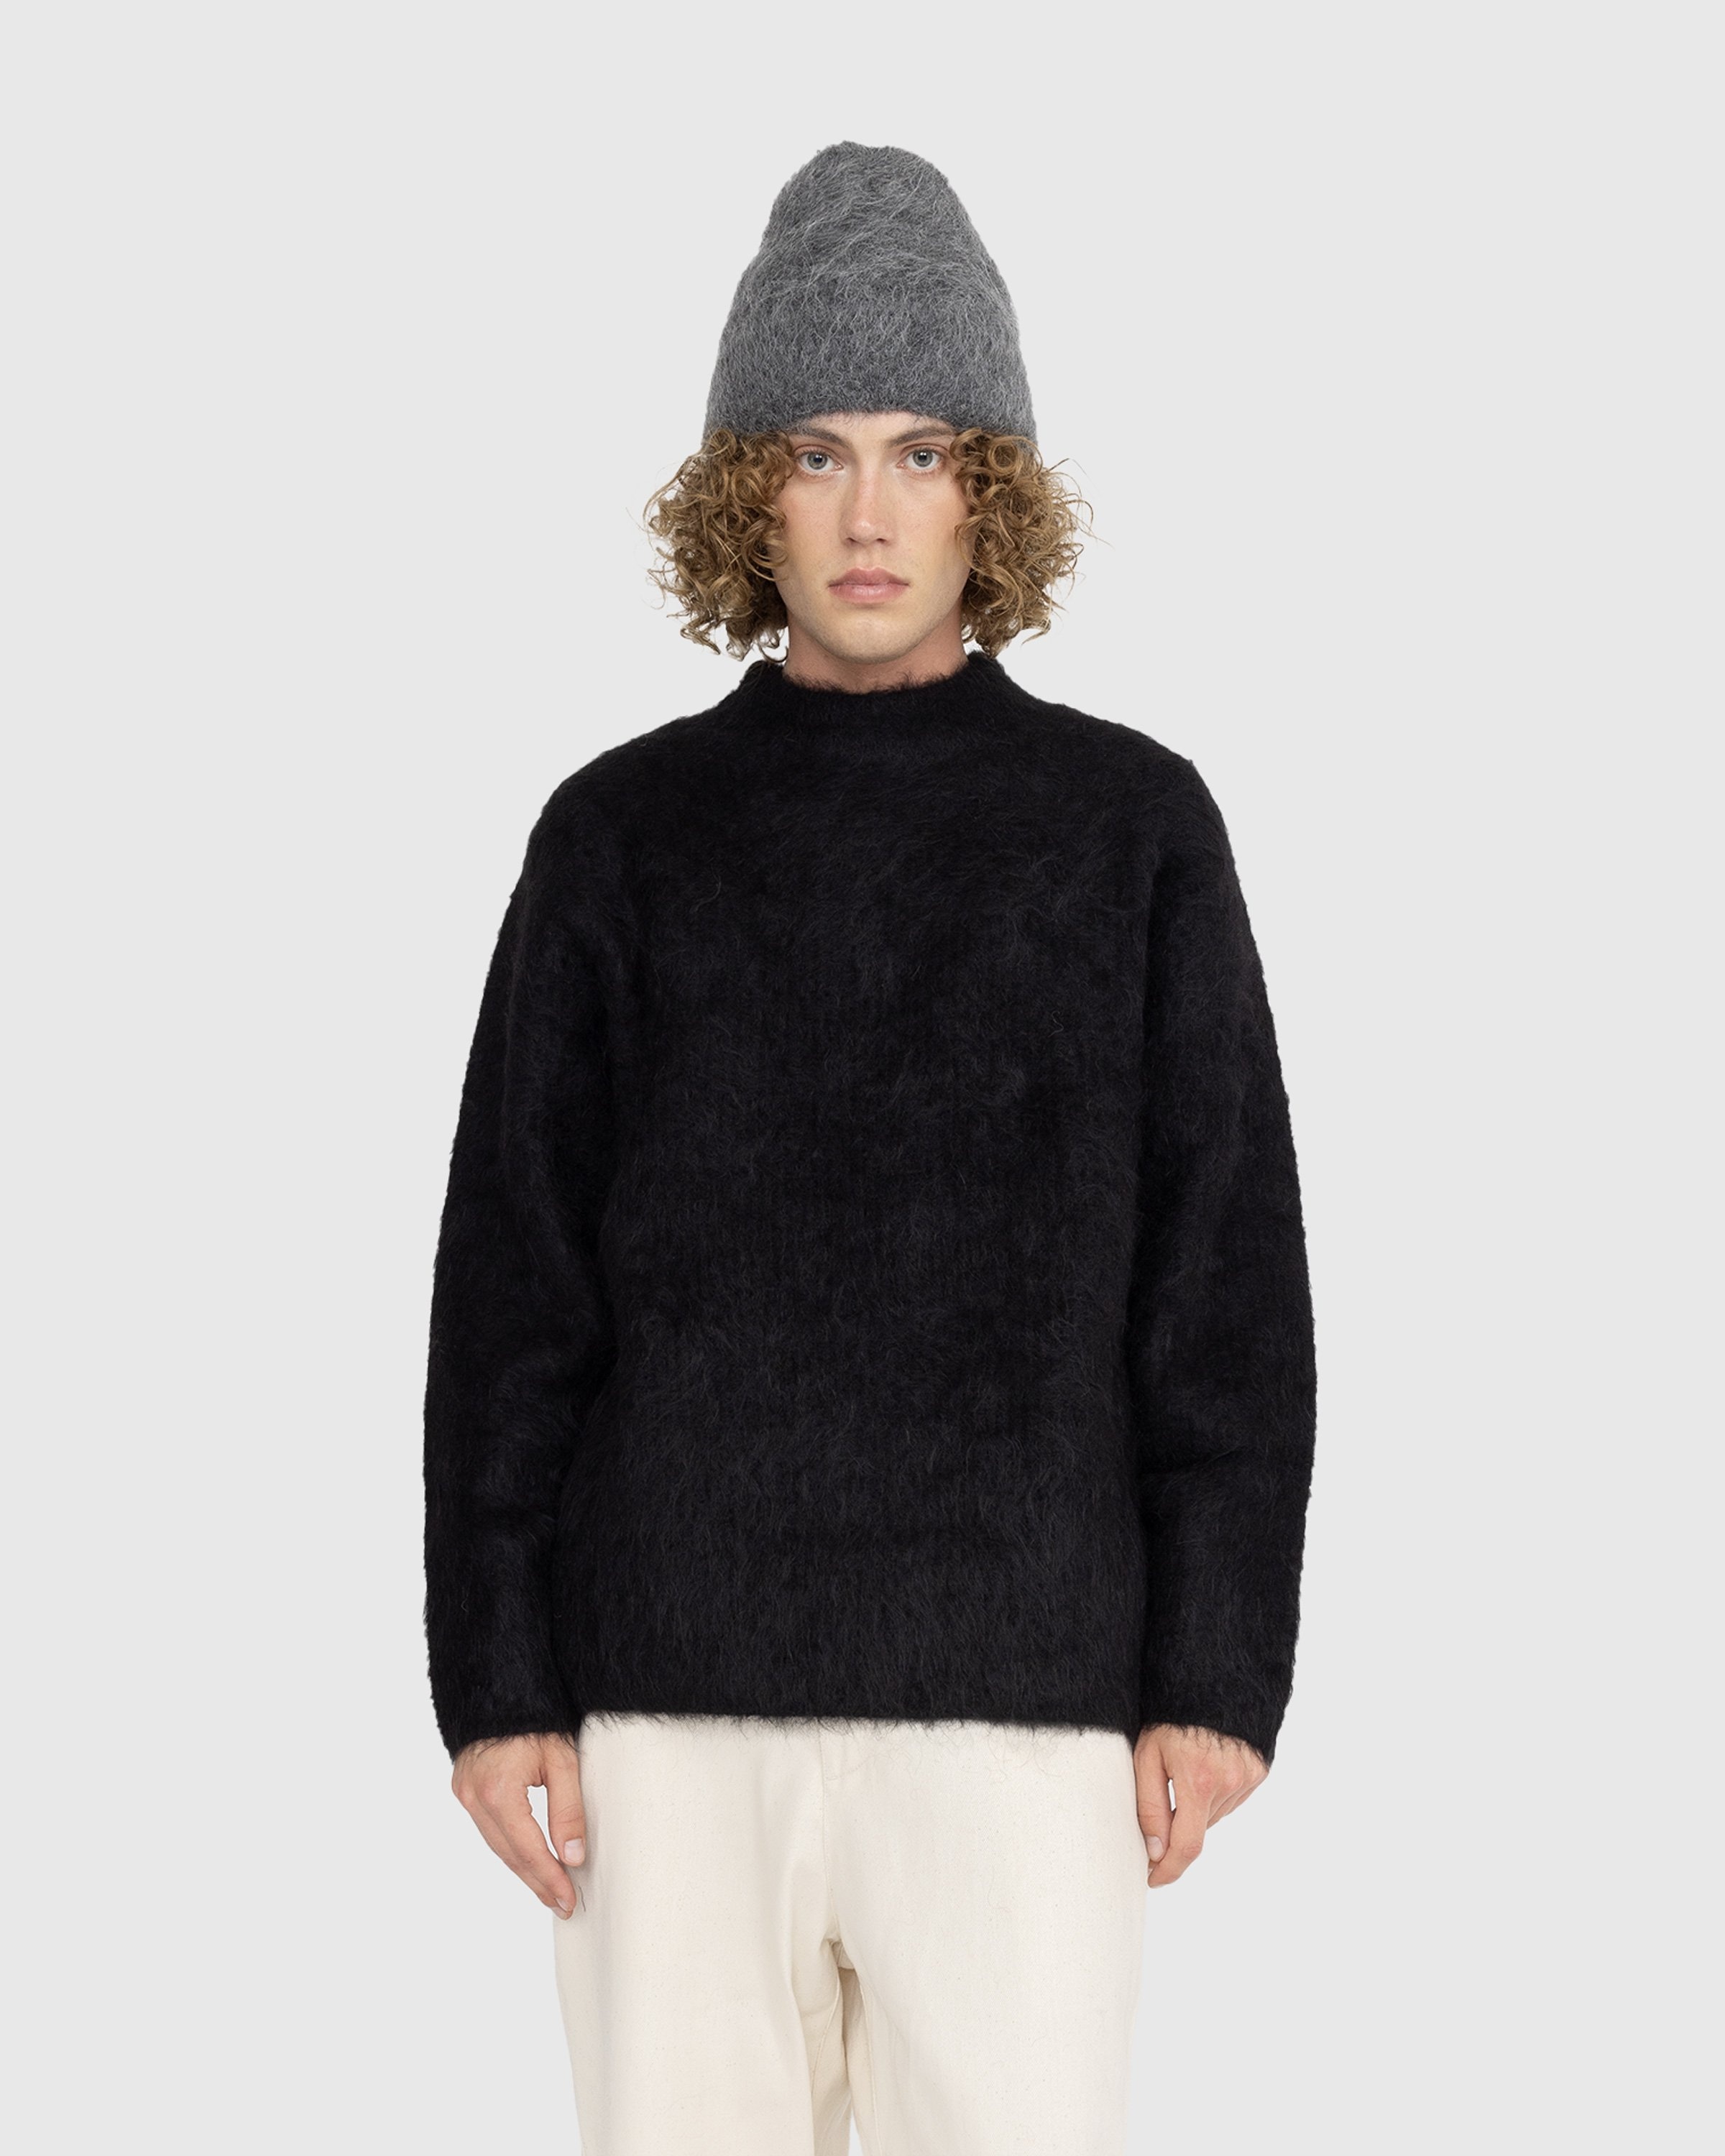 Séfr – Haru Sweater Black - Knitwear - Black - Image 2